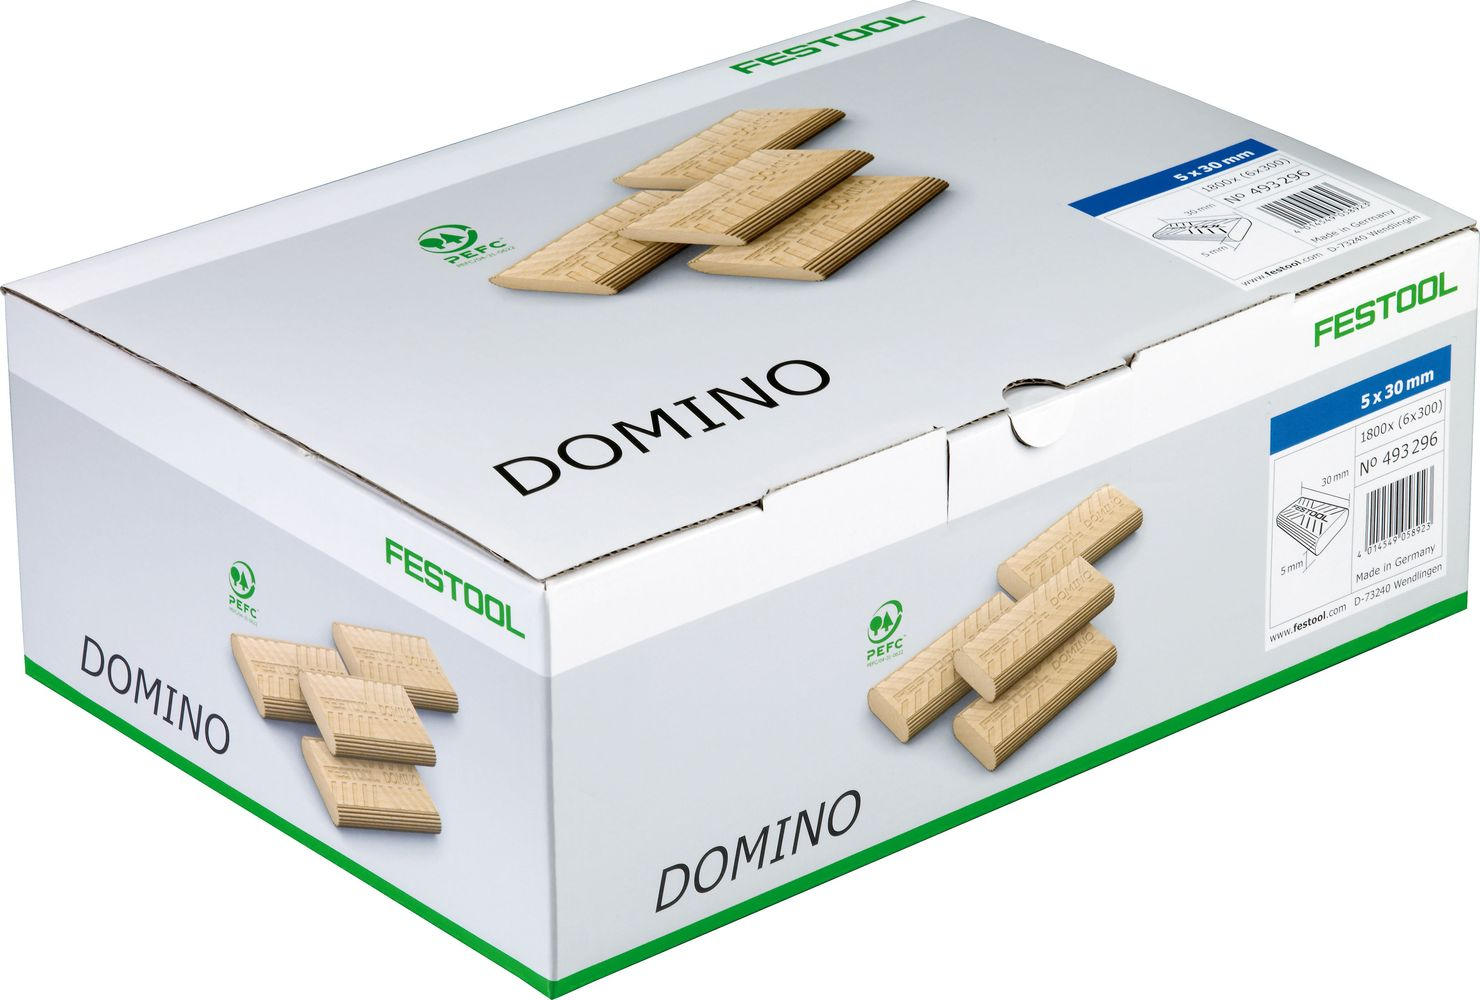 domino-en-hetre-6x40-1140-bte-493297-festool-1